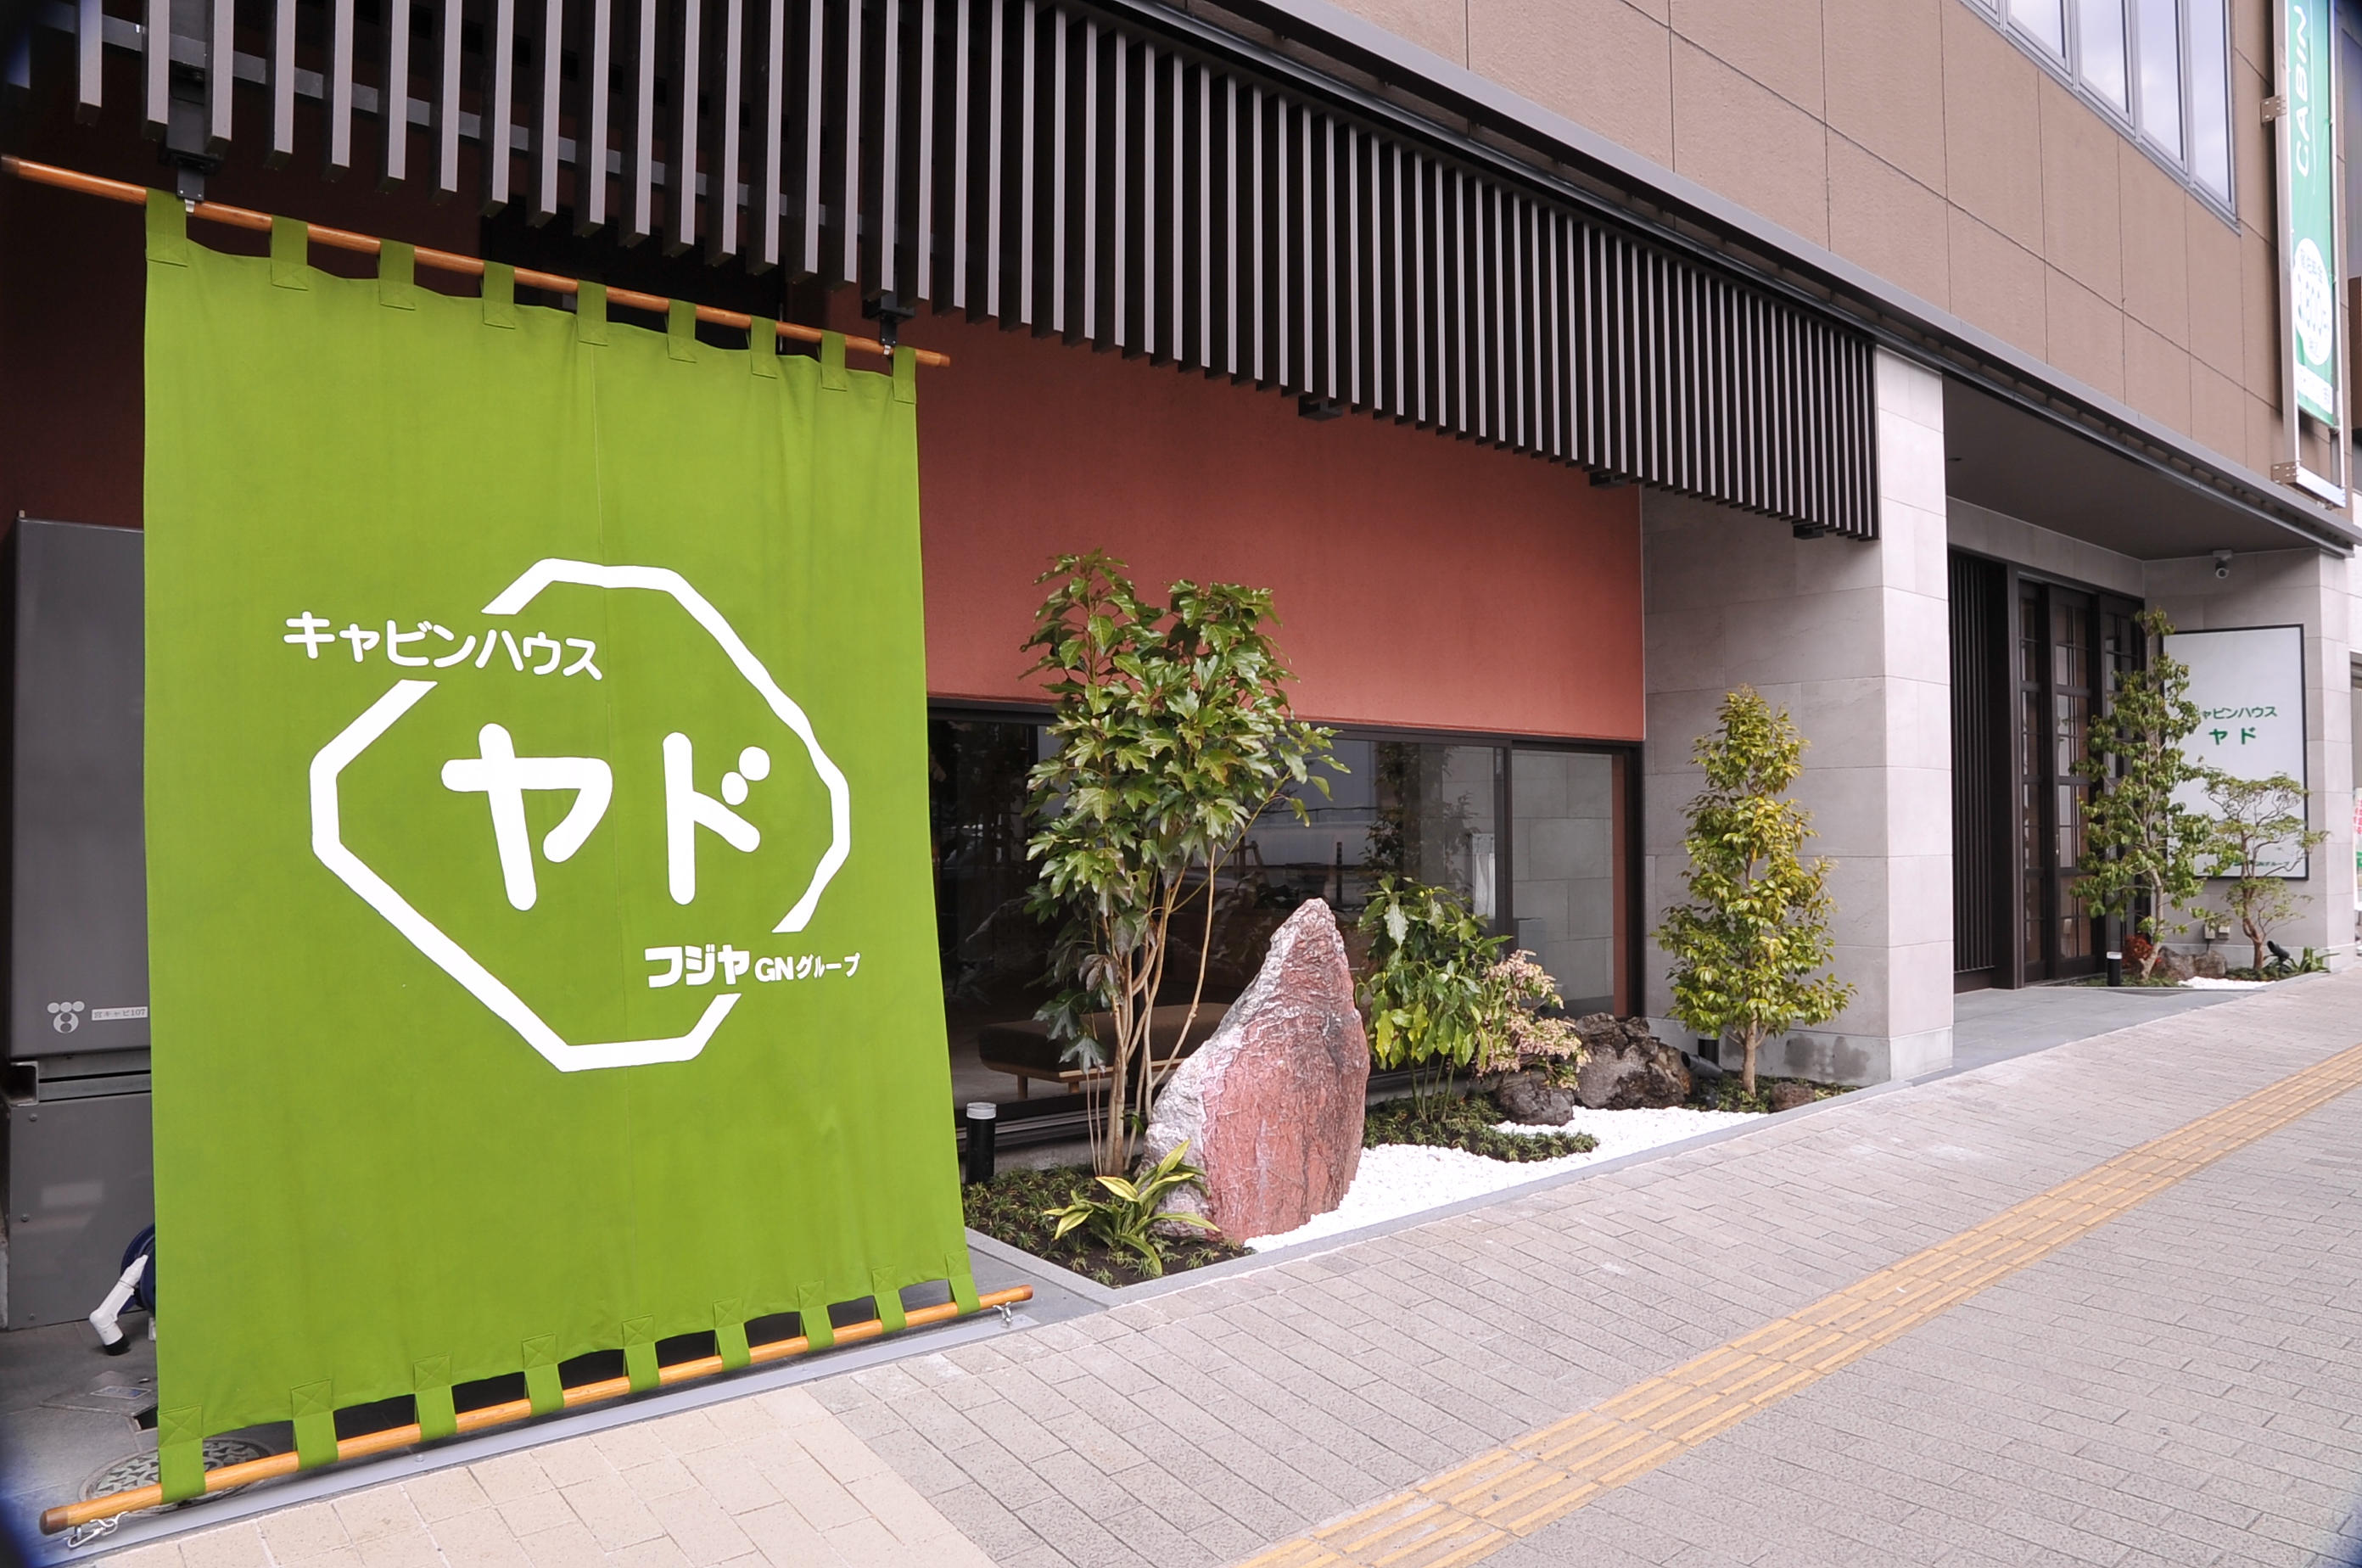 神田商店街の緑の暖簾が目印です。